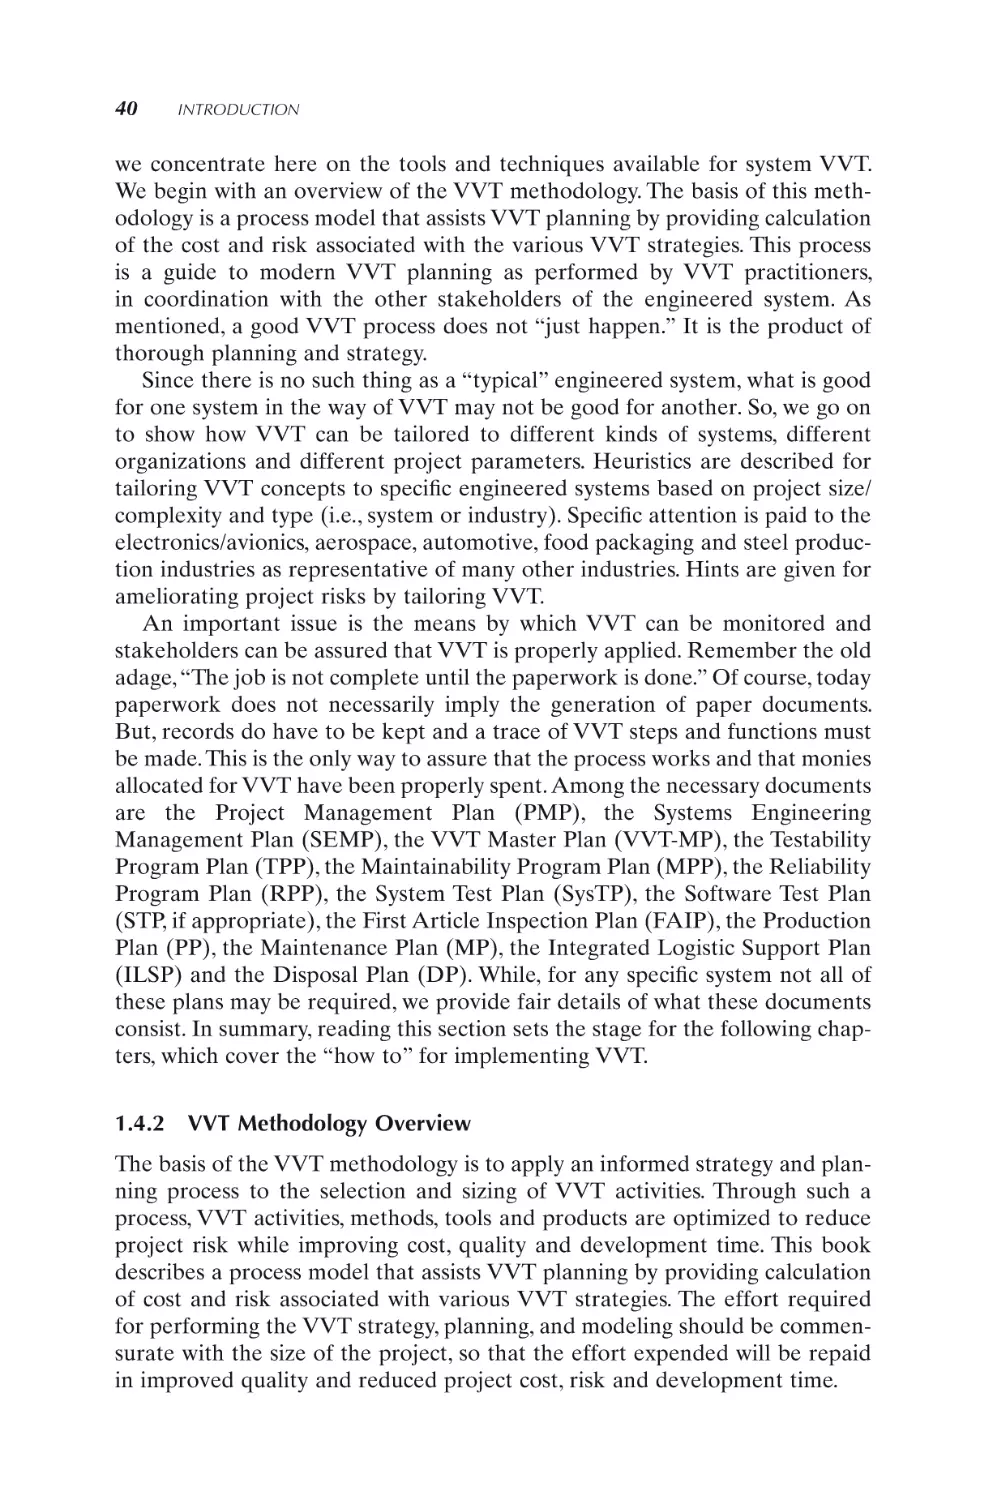 1.4.2 VVT Methodology Overview